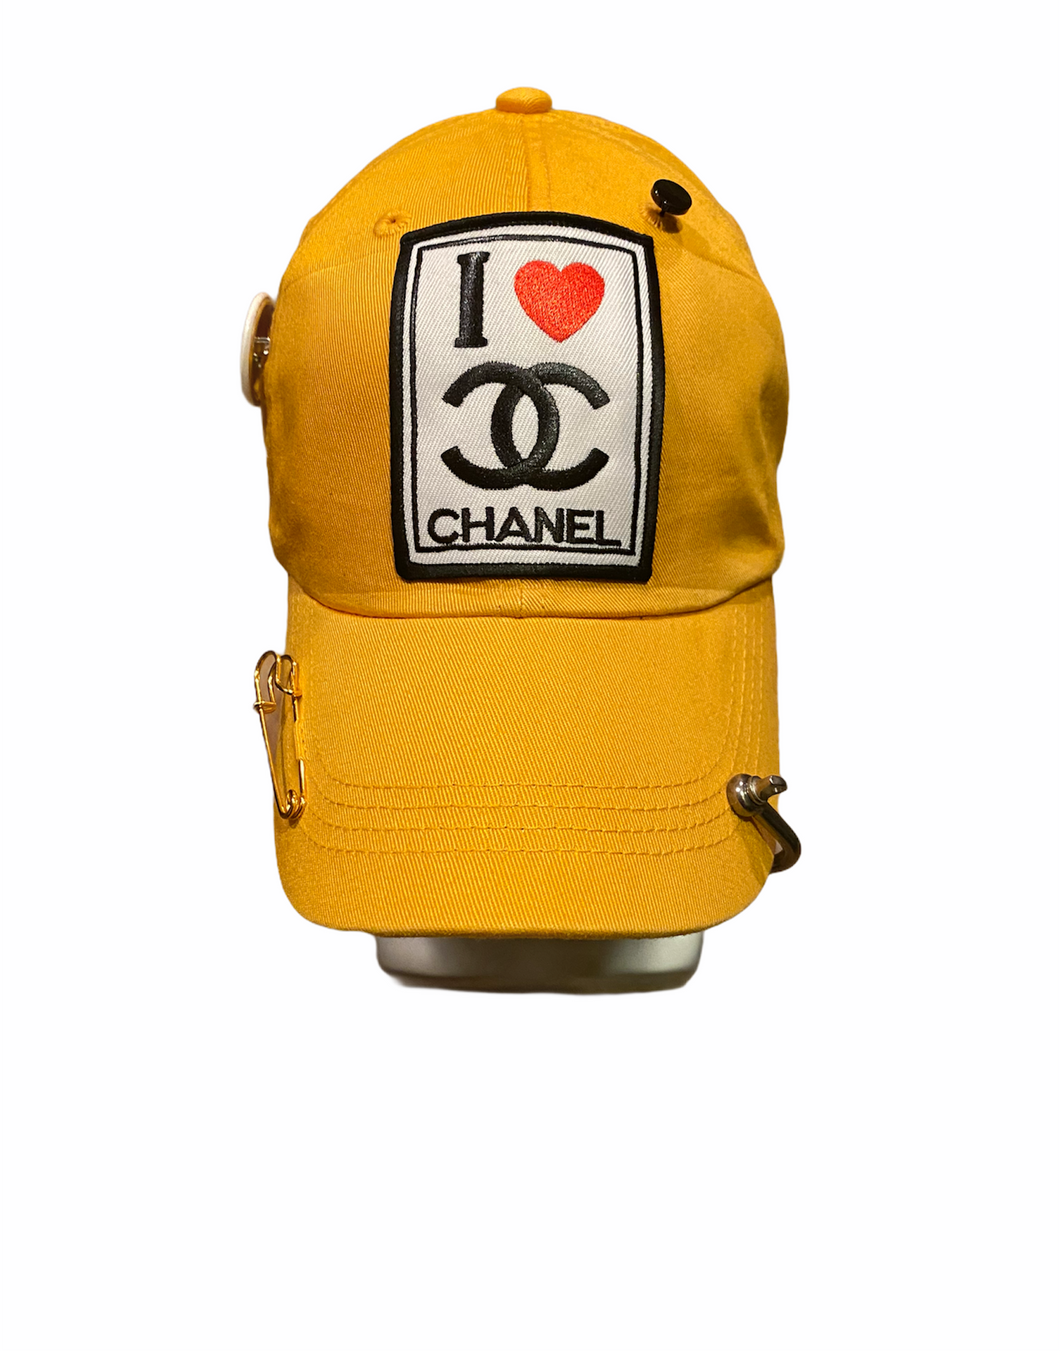 AWOL Designer Inspired I love Chanel